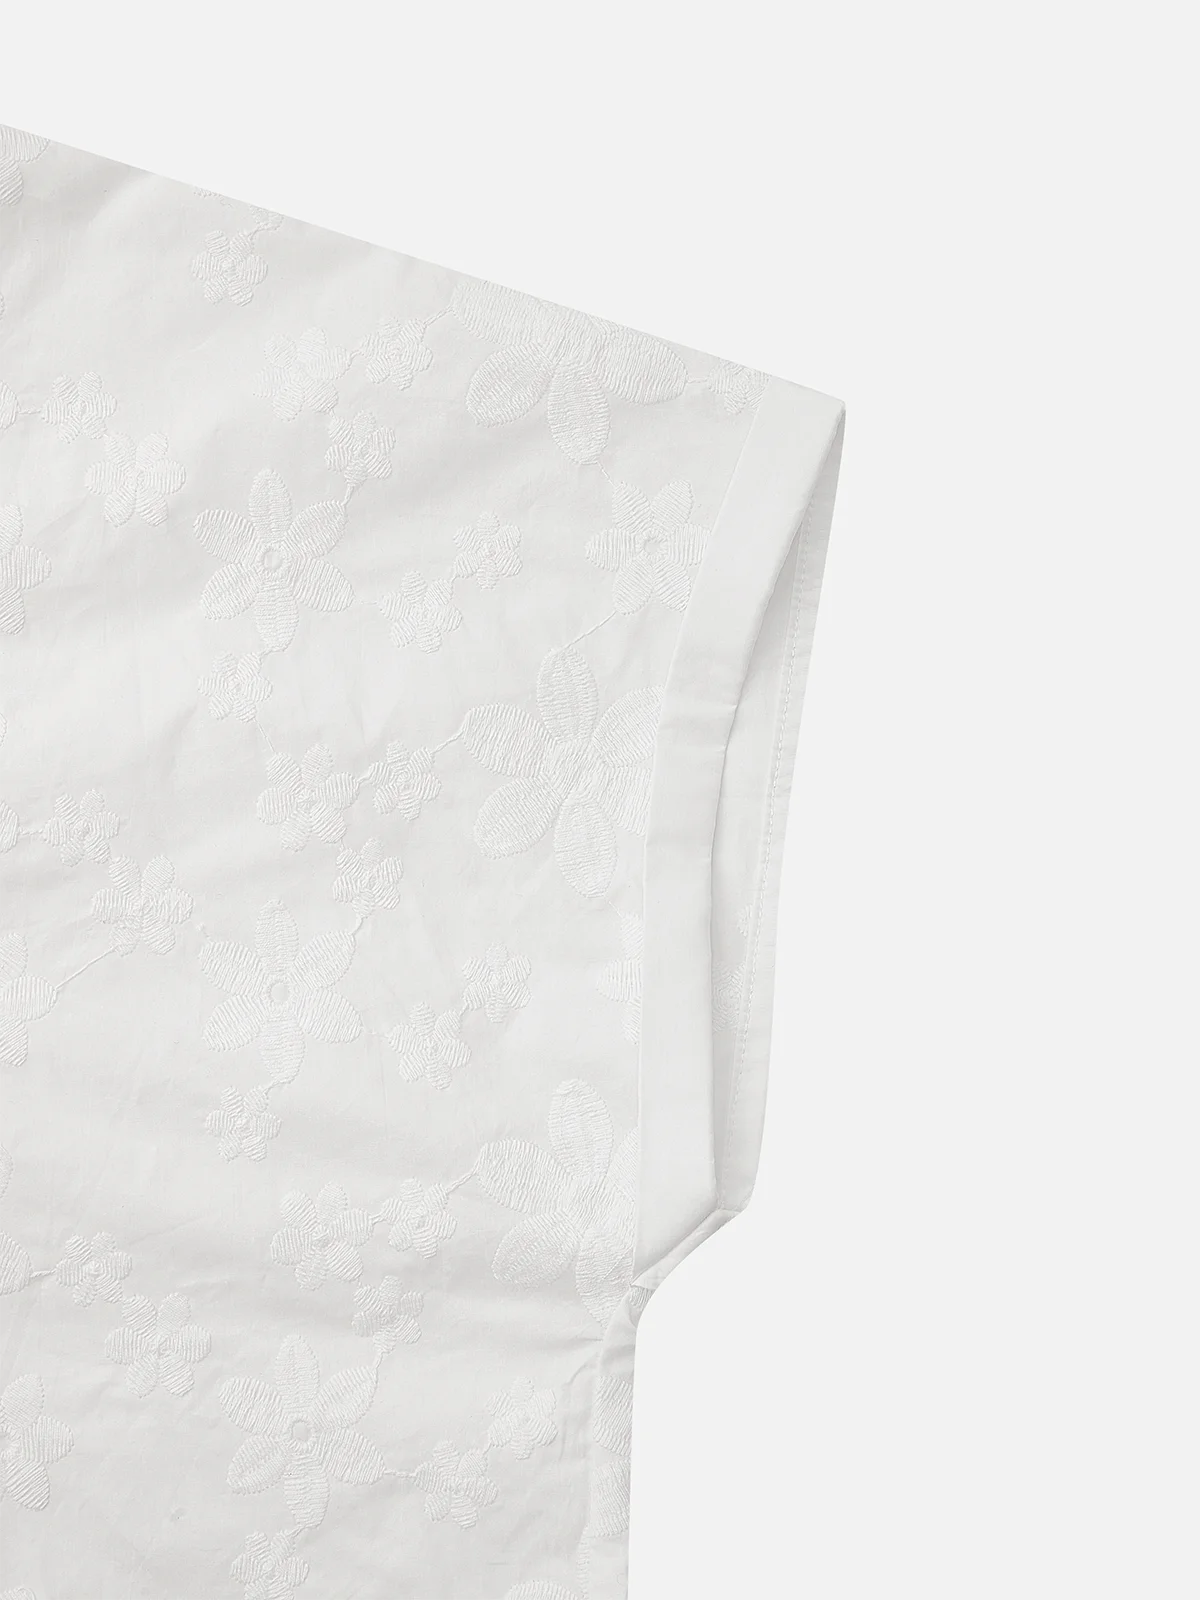 Damen Leinenbluse Sommer Weiß Einfach V-Ausschnitt Shirts